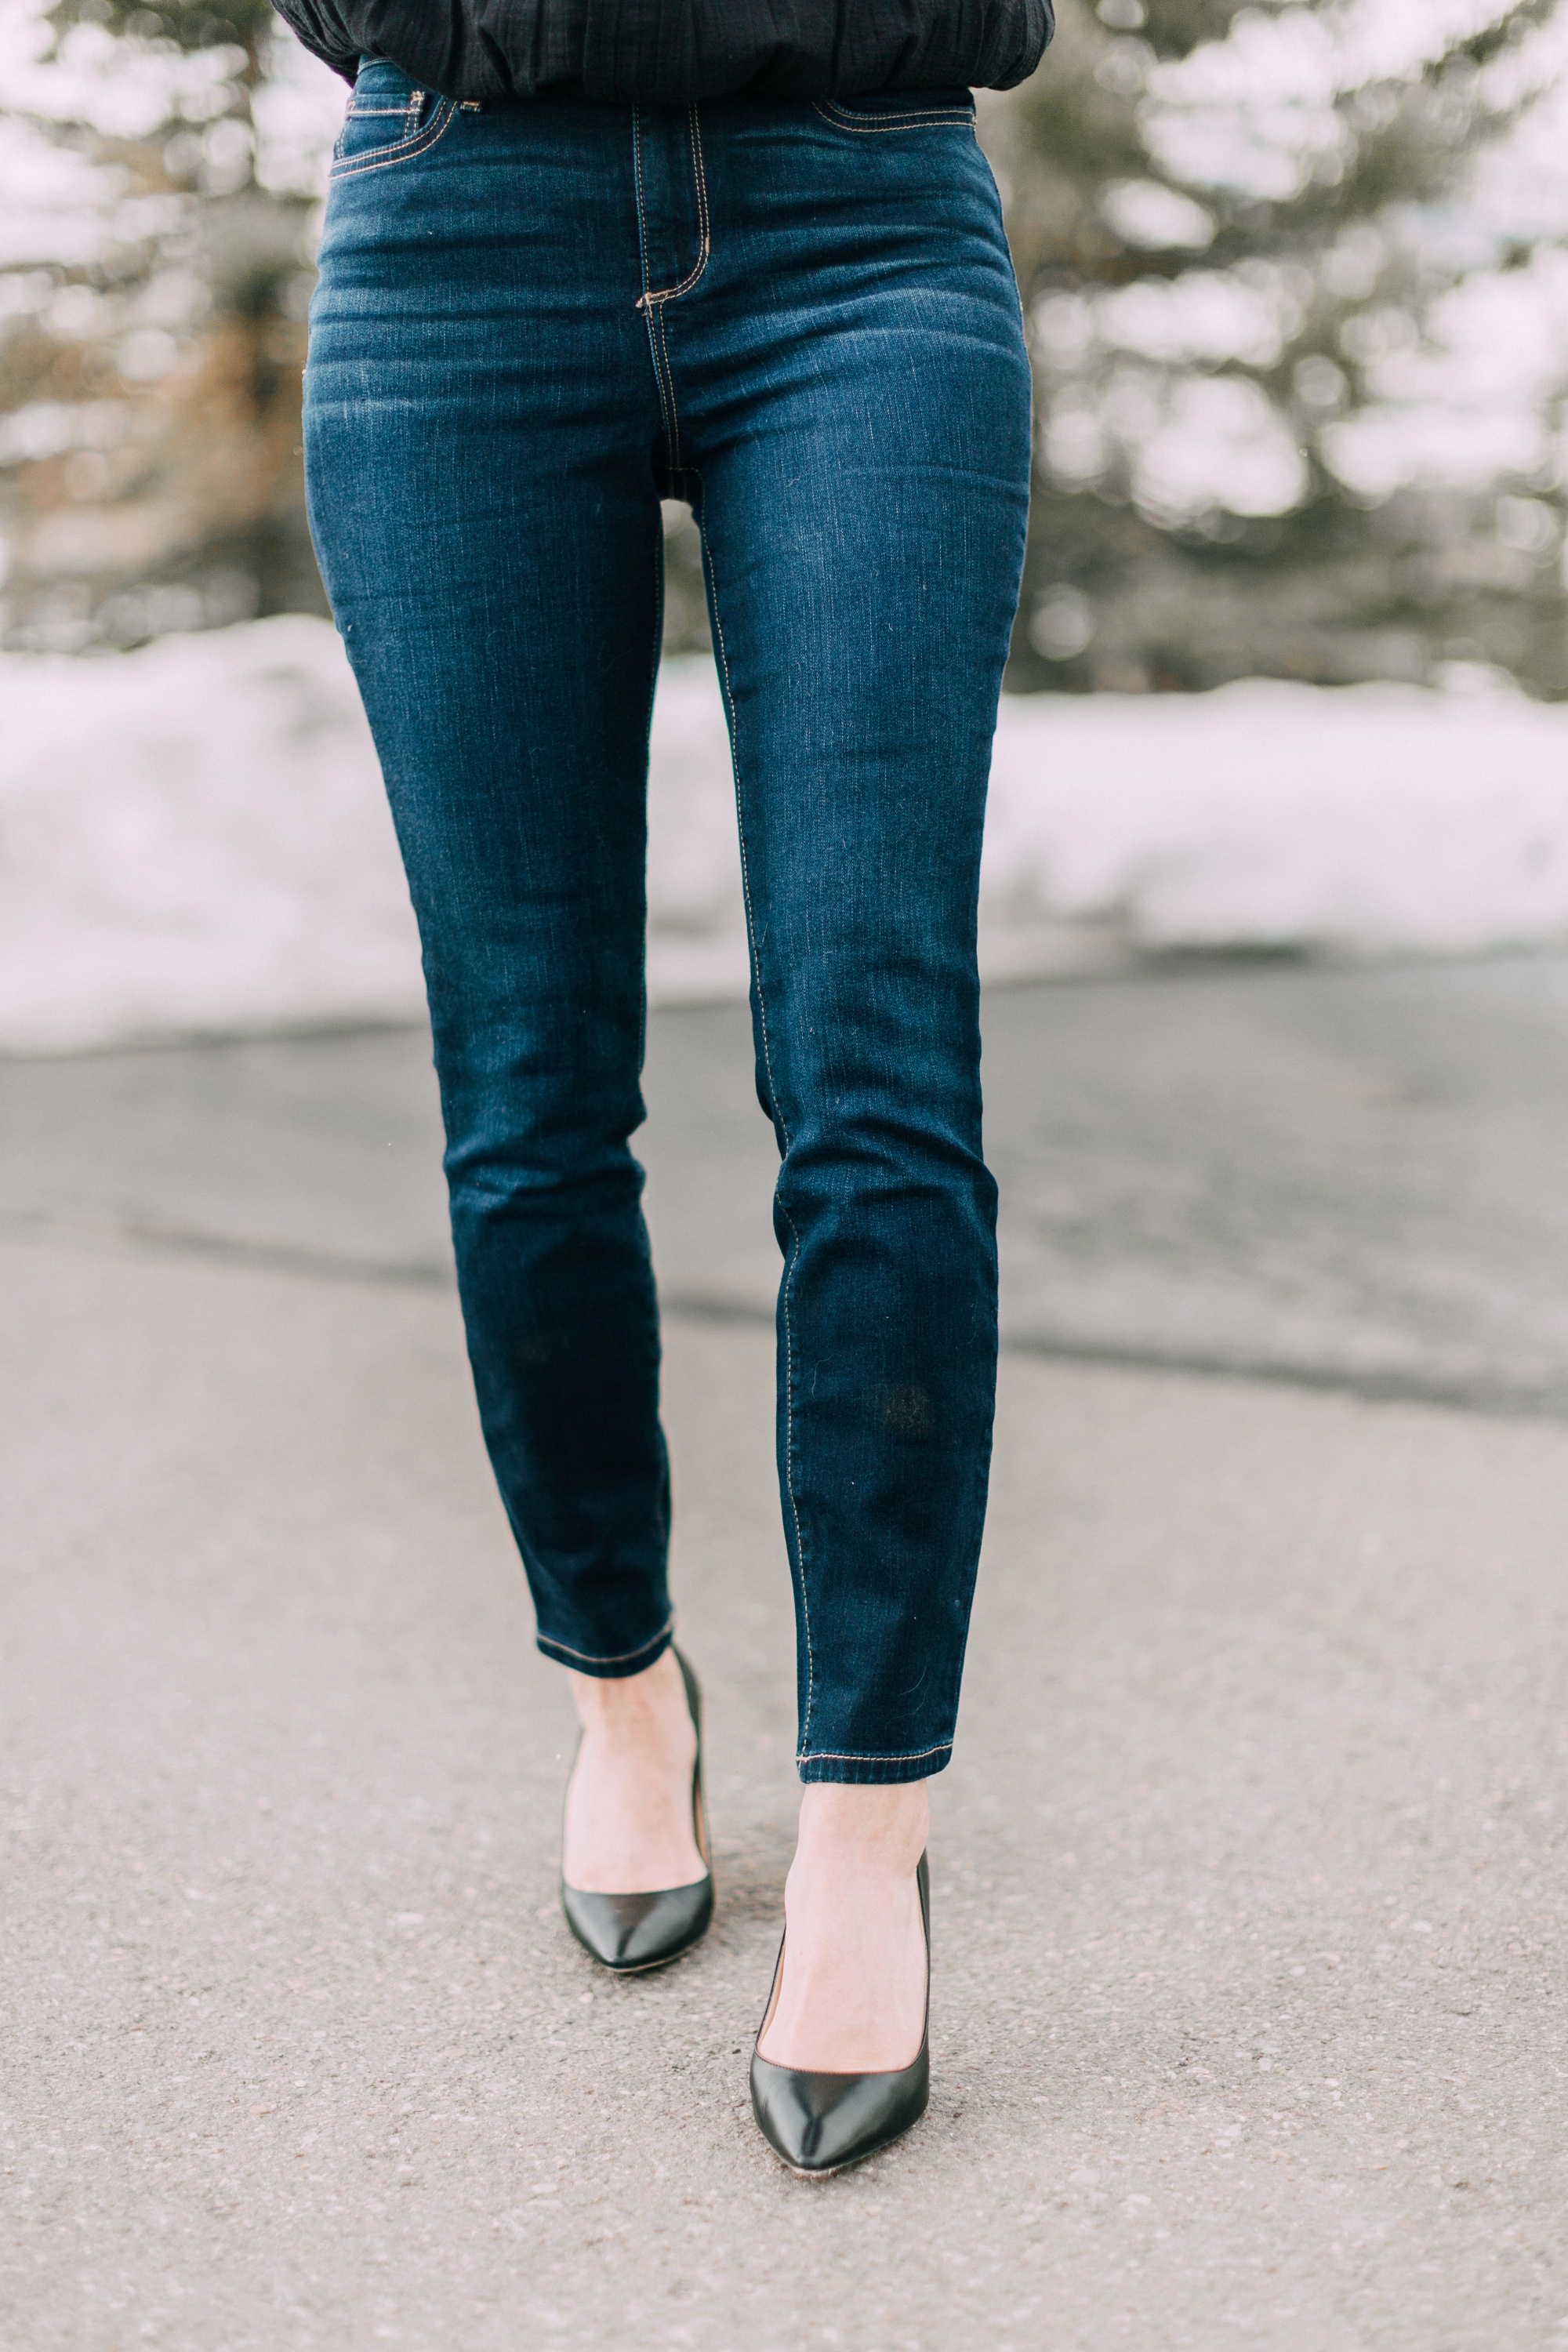 sofia vergara skinny jeans